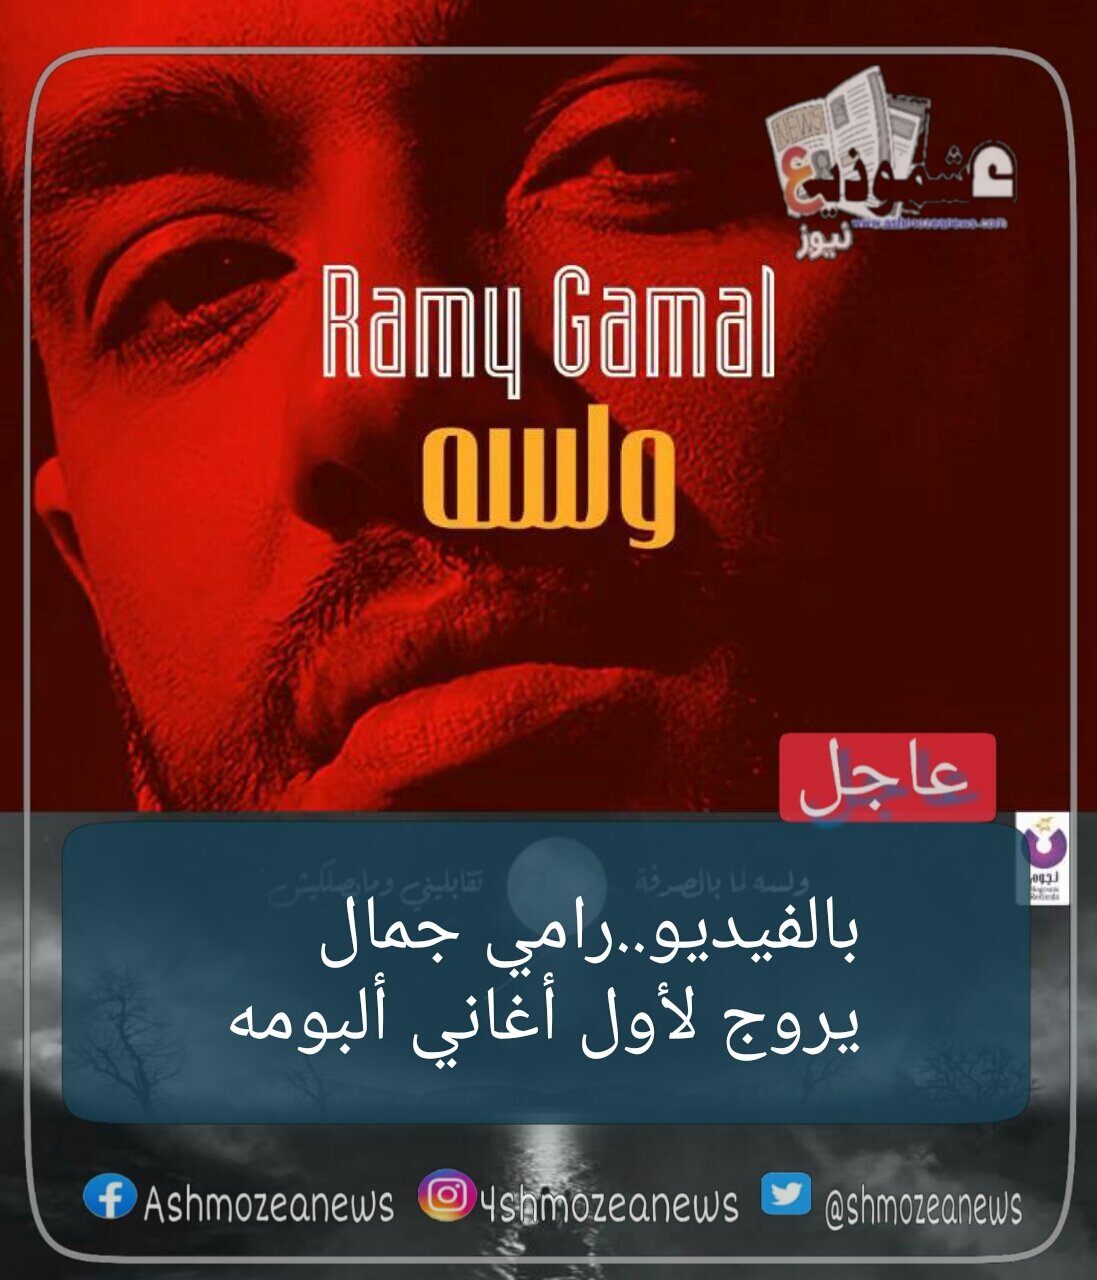 بالفيديو...رامي جمال يروج لأول أغاني ألبومه